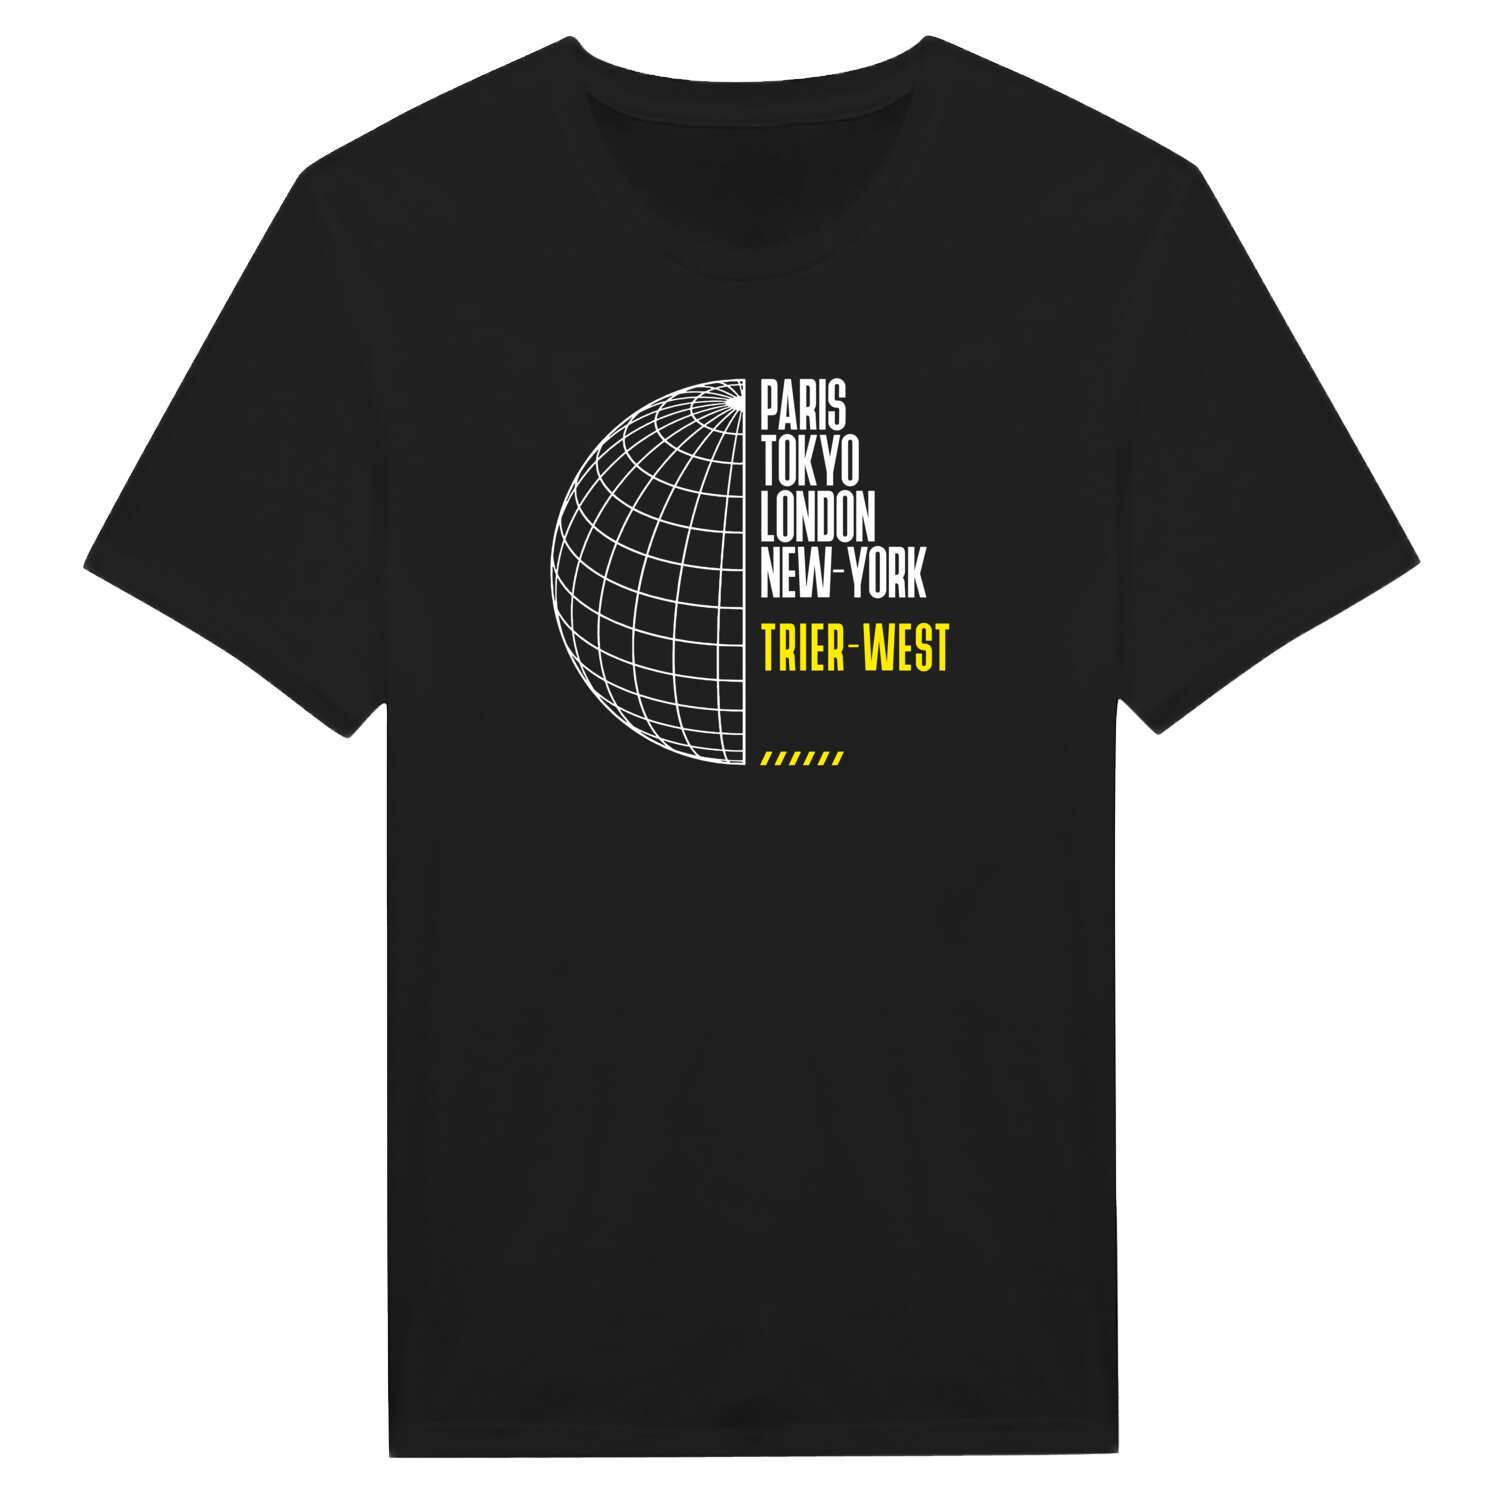 Trier-West T-Shirt »Paris Tokyo London«